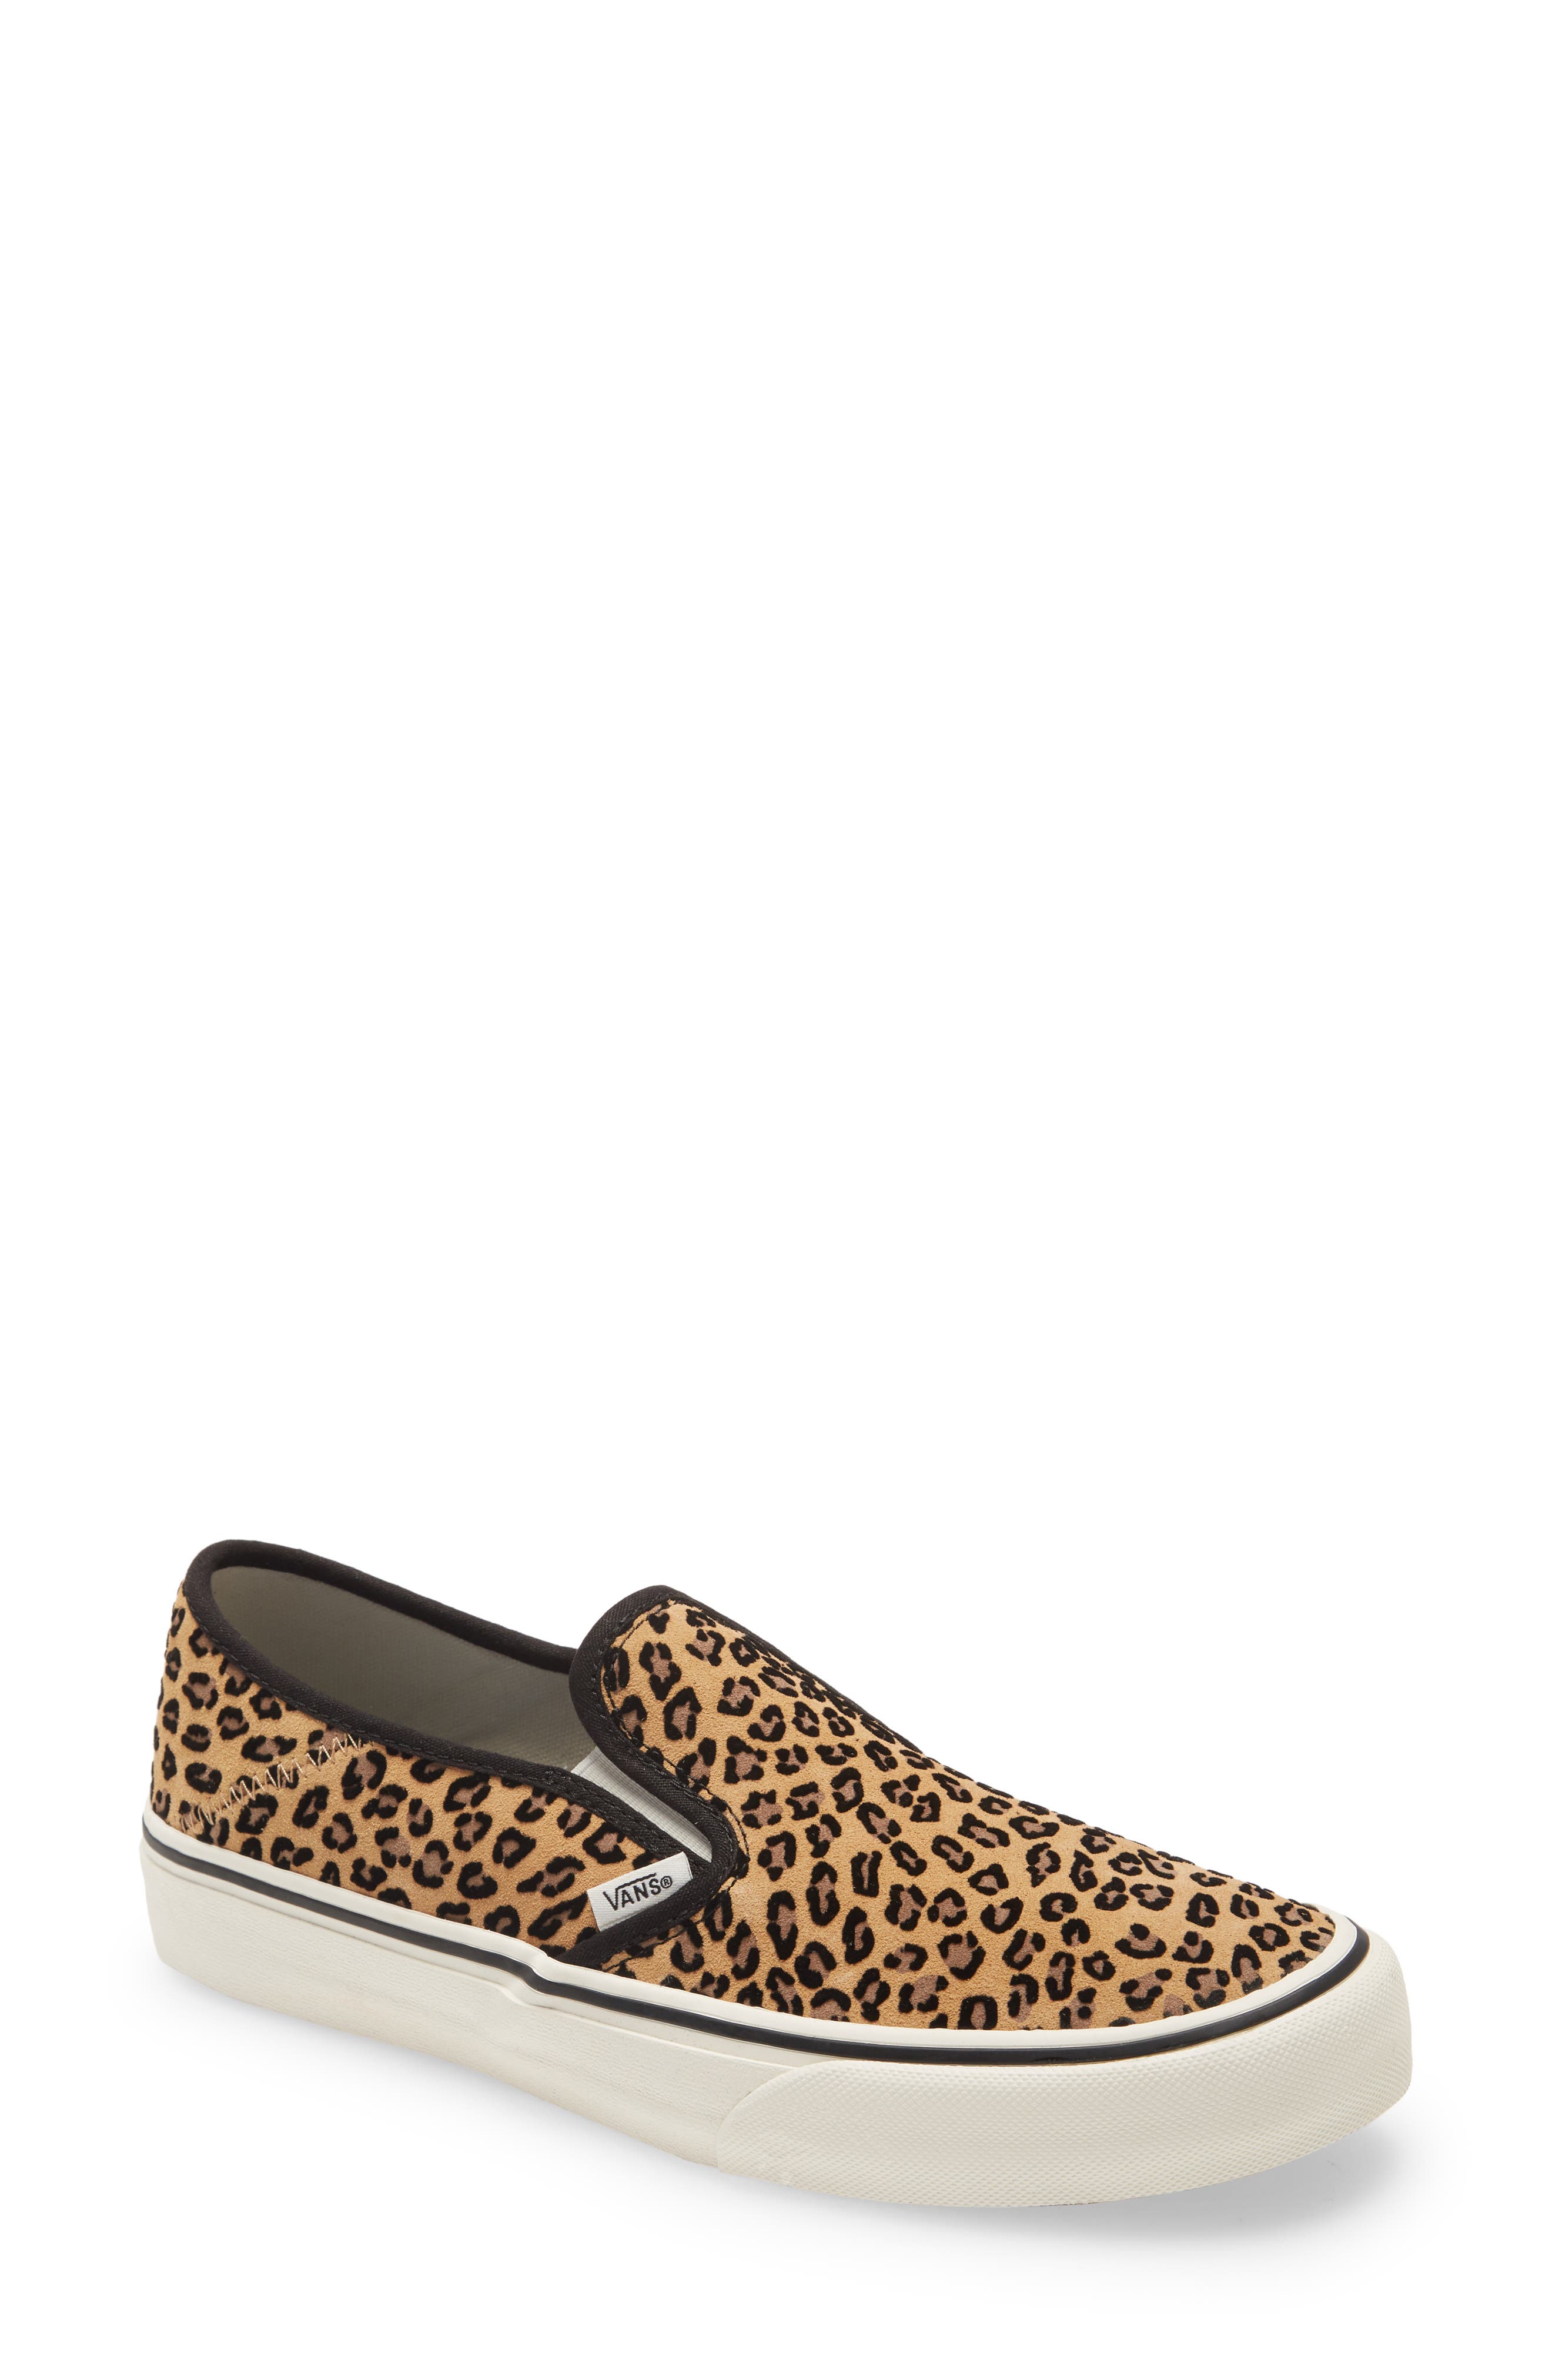 women's leopard slip on sneakers